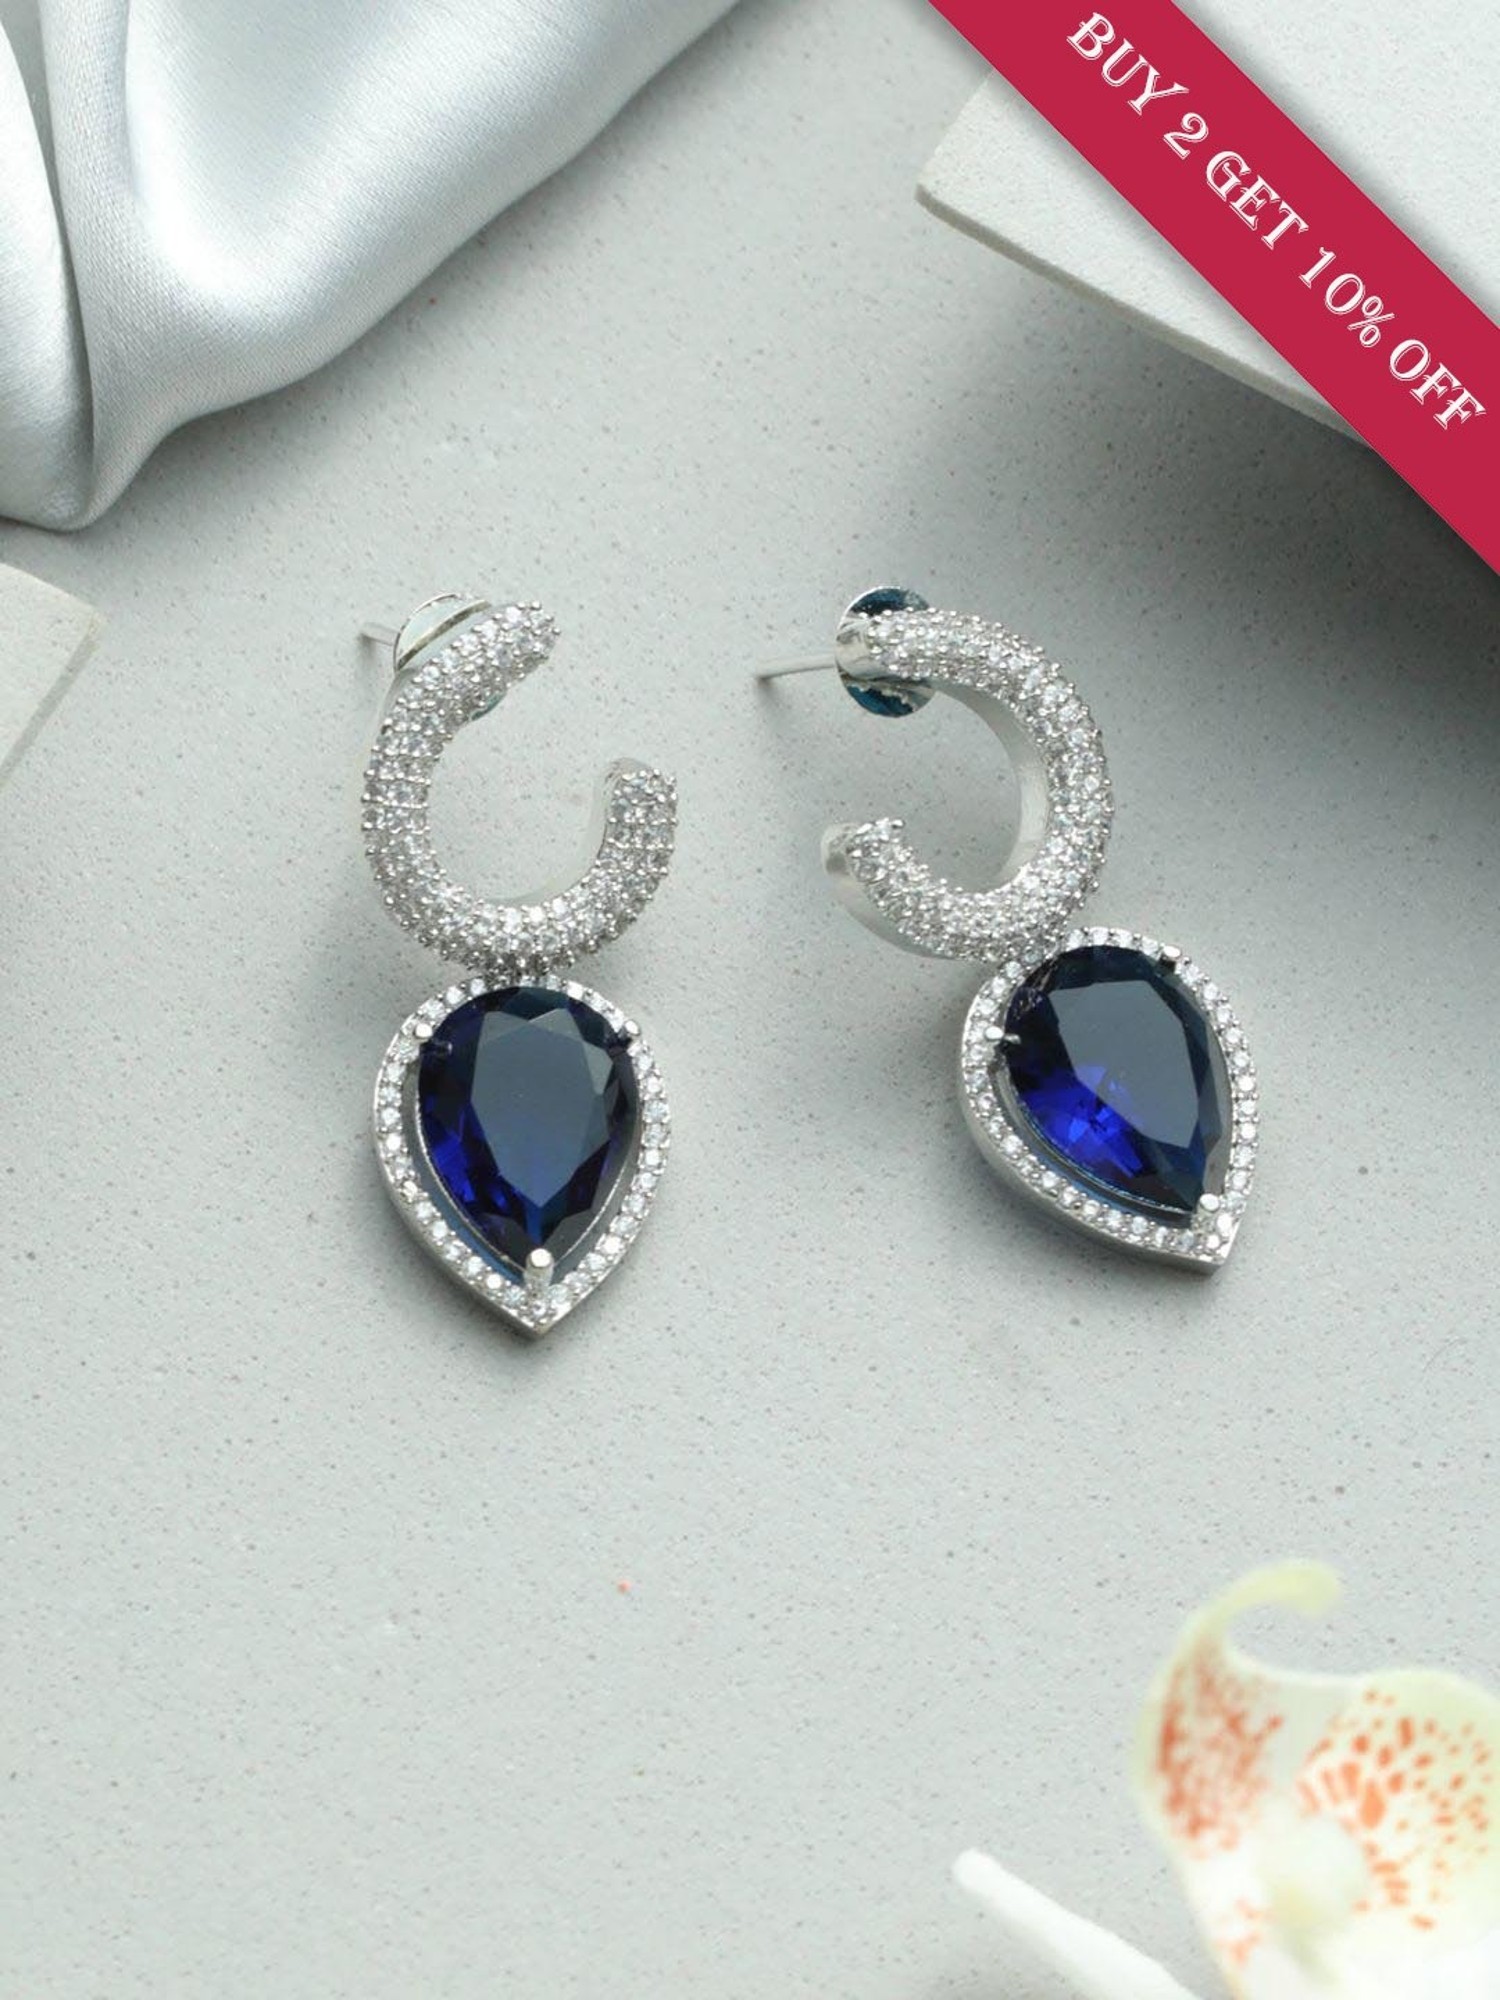 Get Silver Look Alike Handmade Blue Peacock Designer Earrings at  1263   LBB Shop